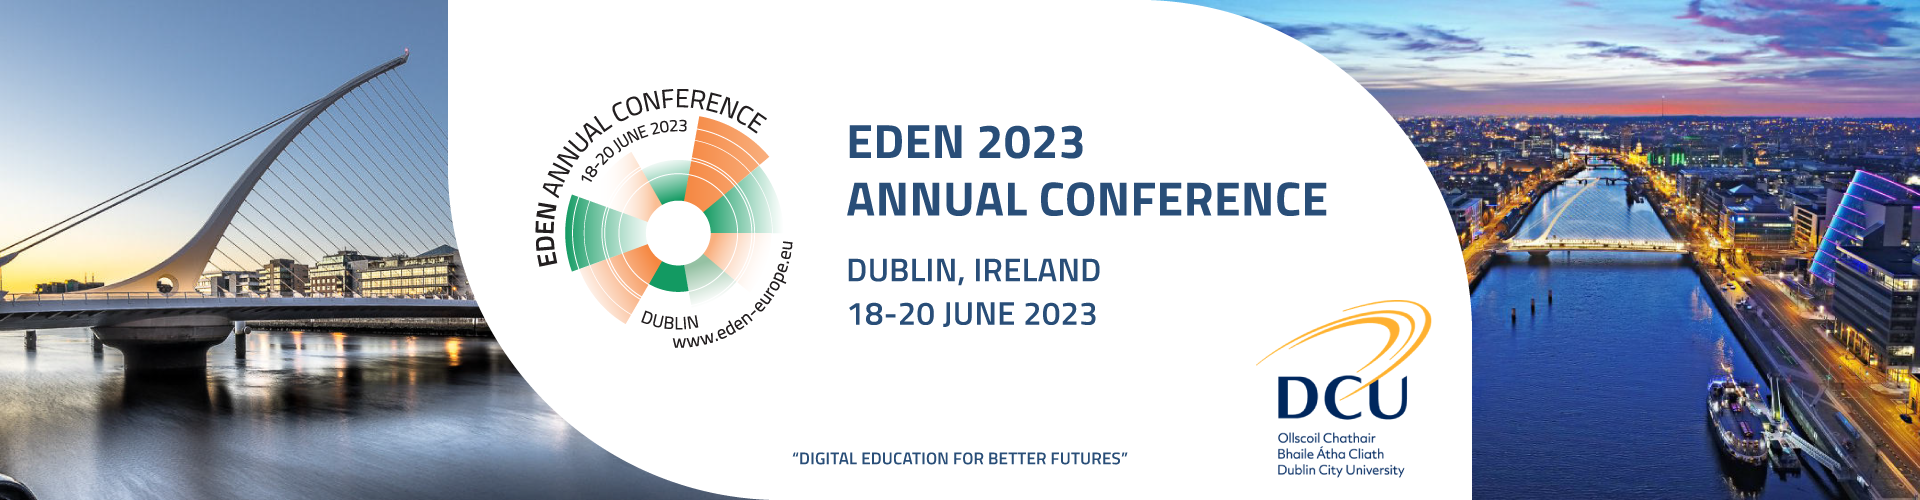 Ετήσια διάσκεψη EDEN 2023, Δουβλίνο, Ιρλανδία, 18-20 Ιουνίου 2023